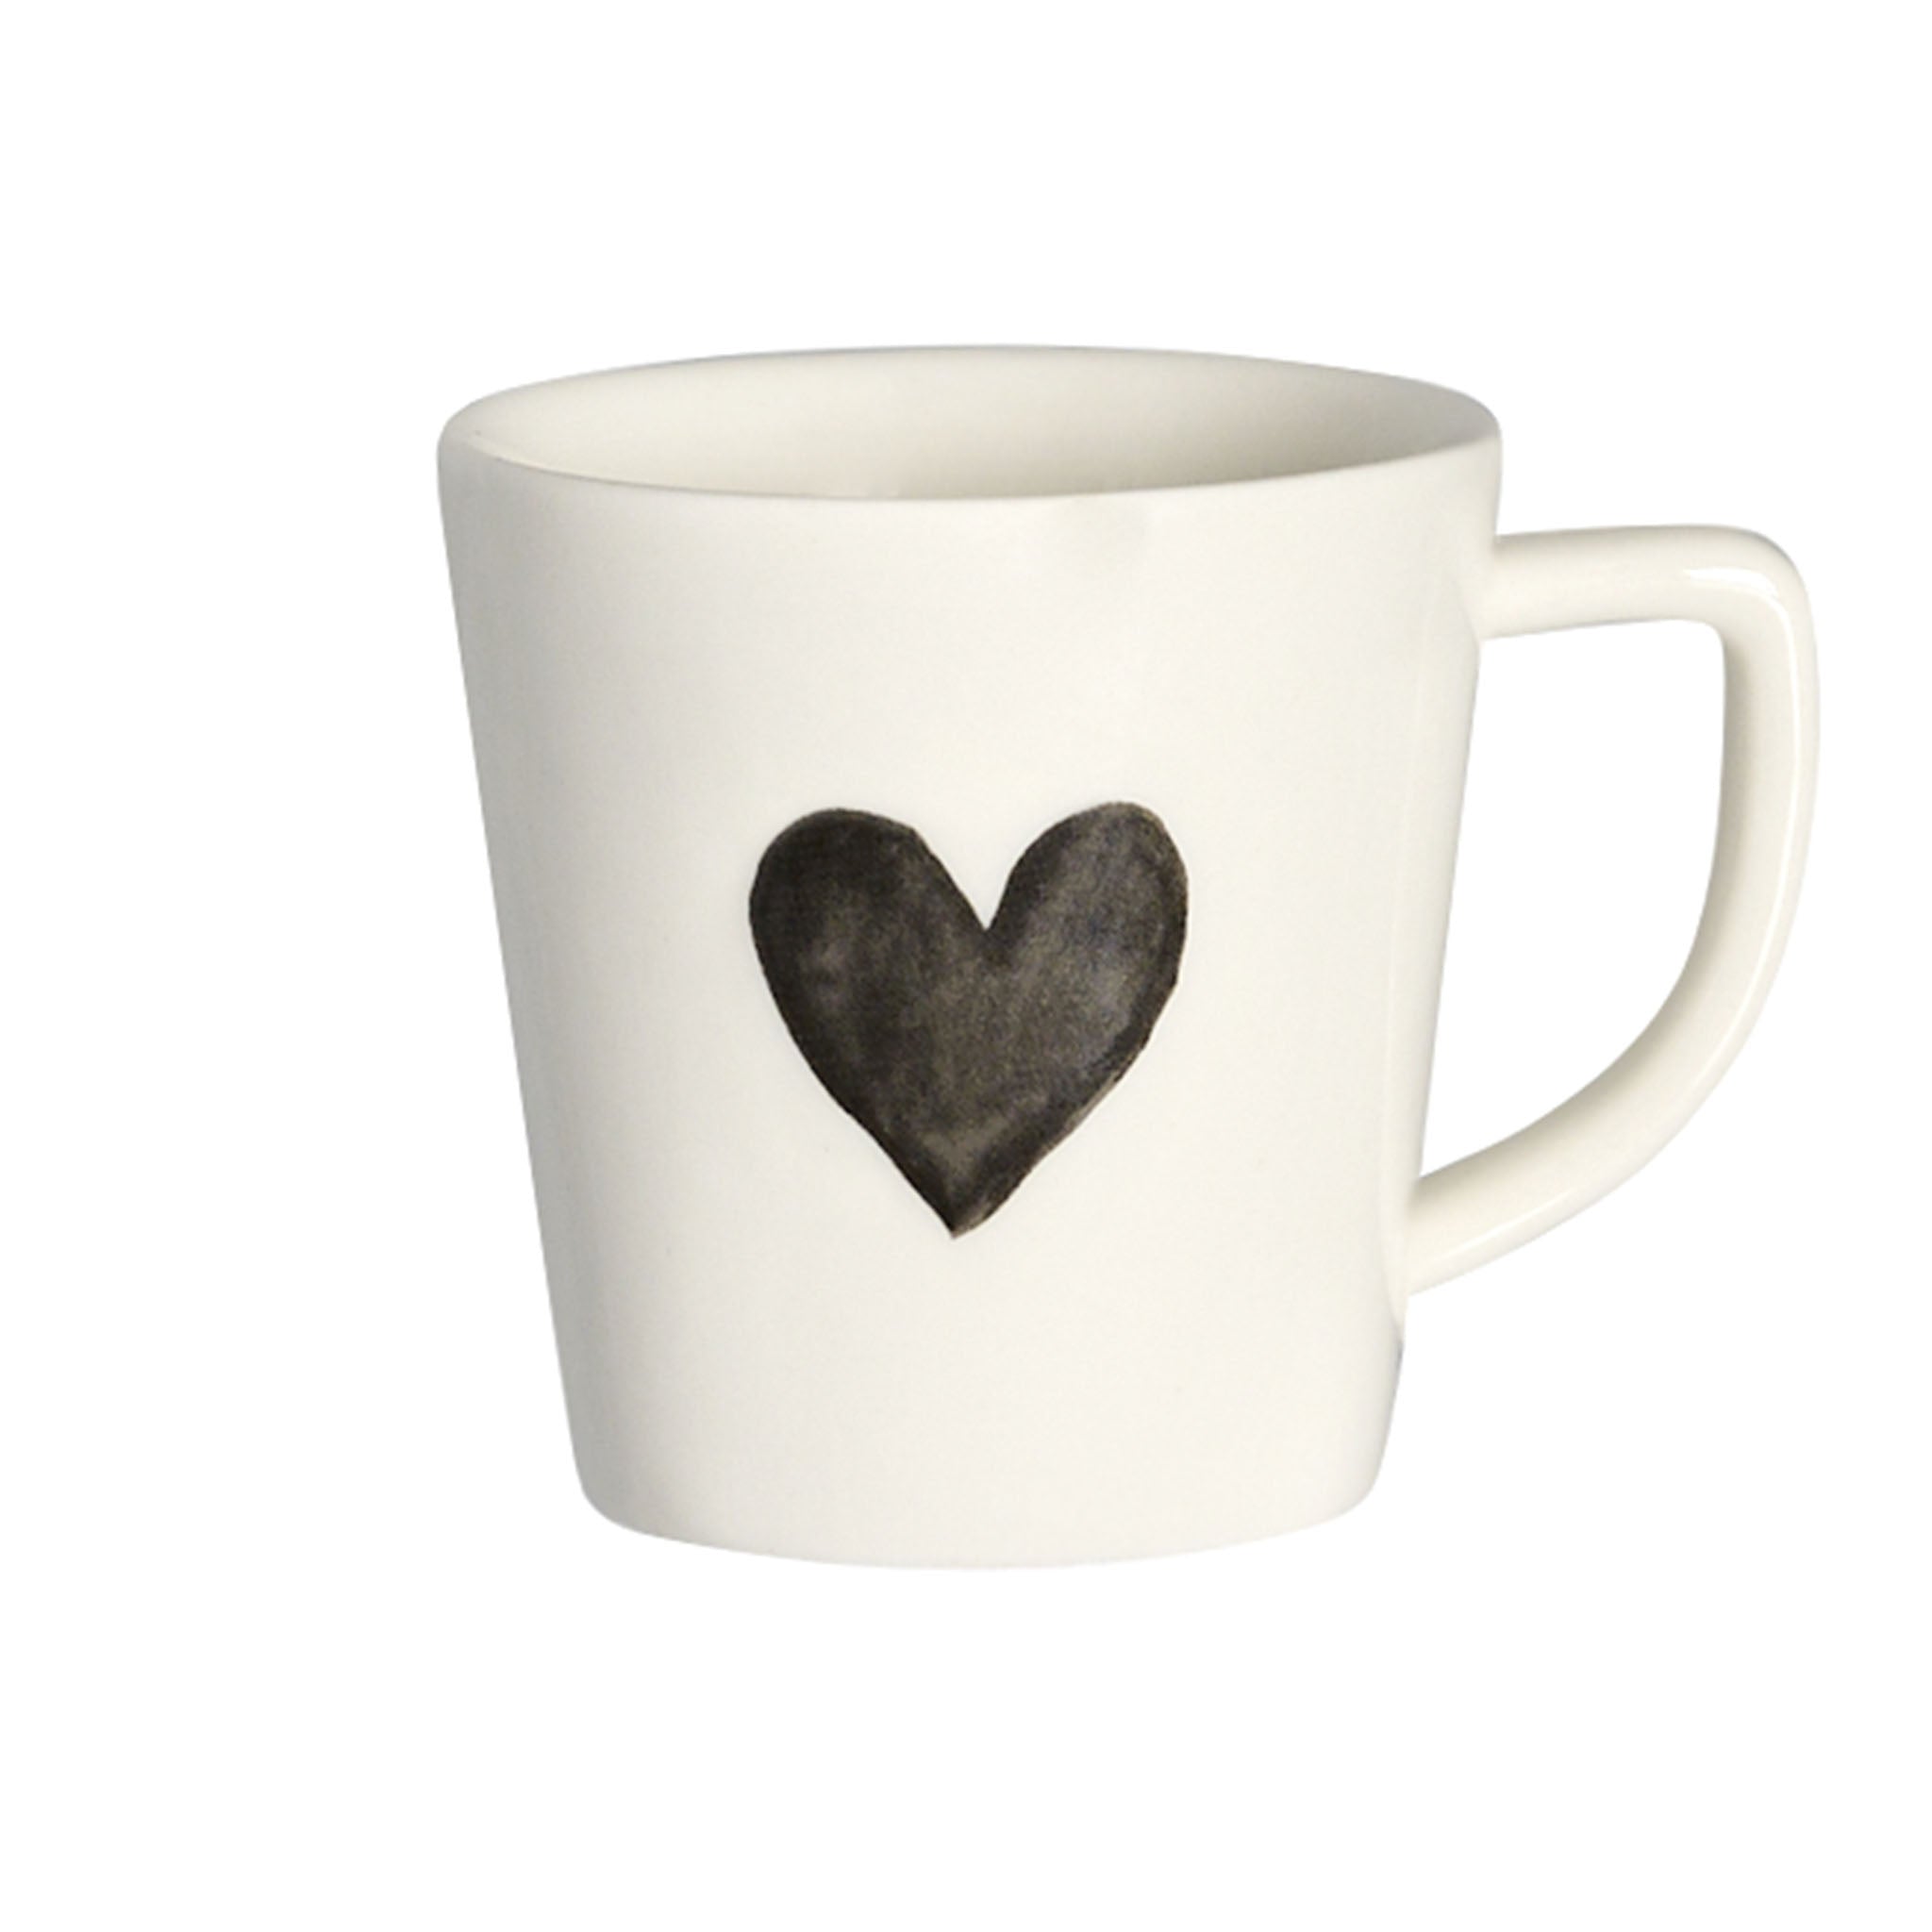 Grey Heart Espresso Cup - Set of 2